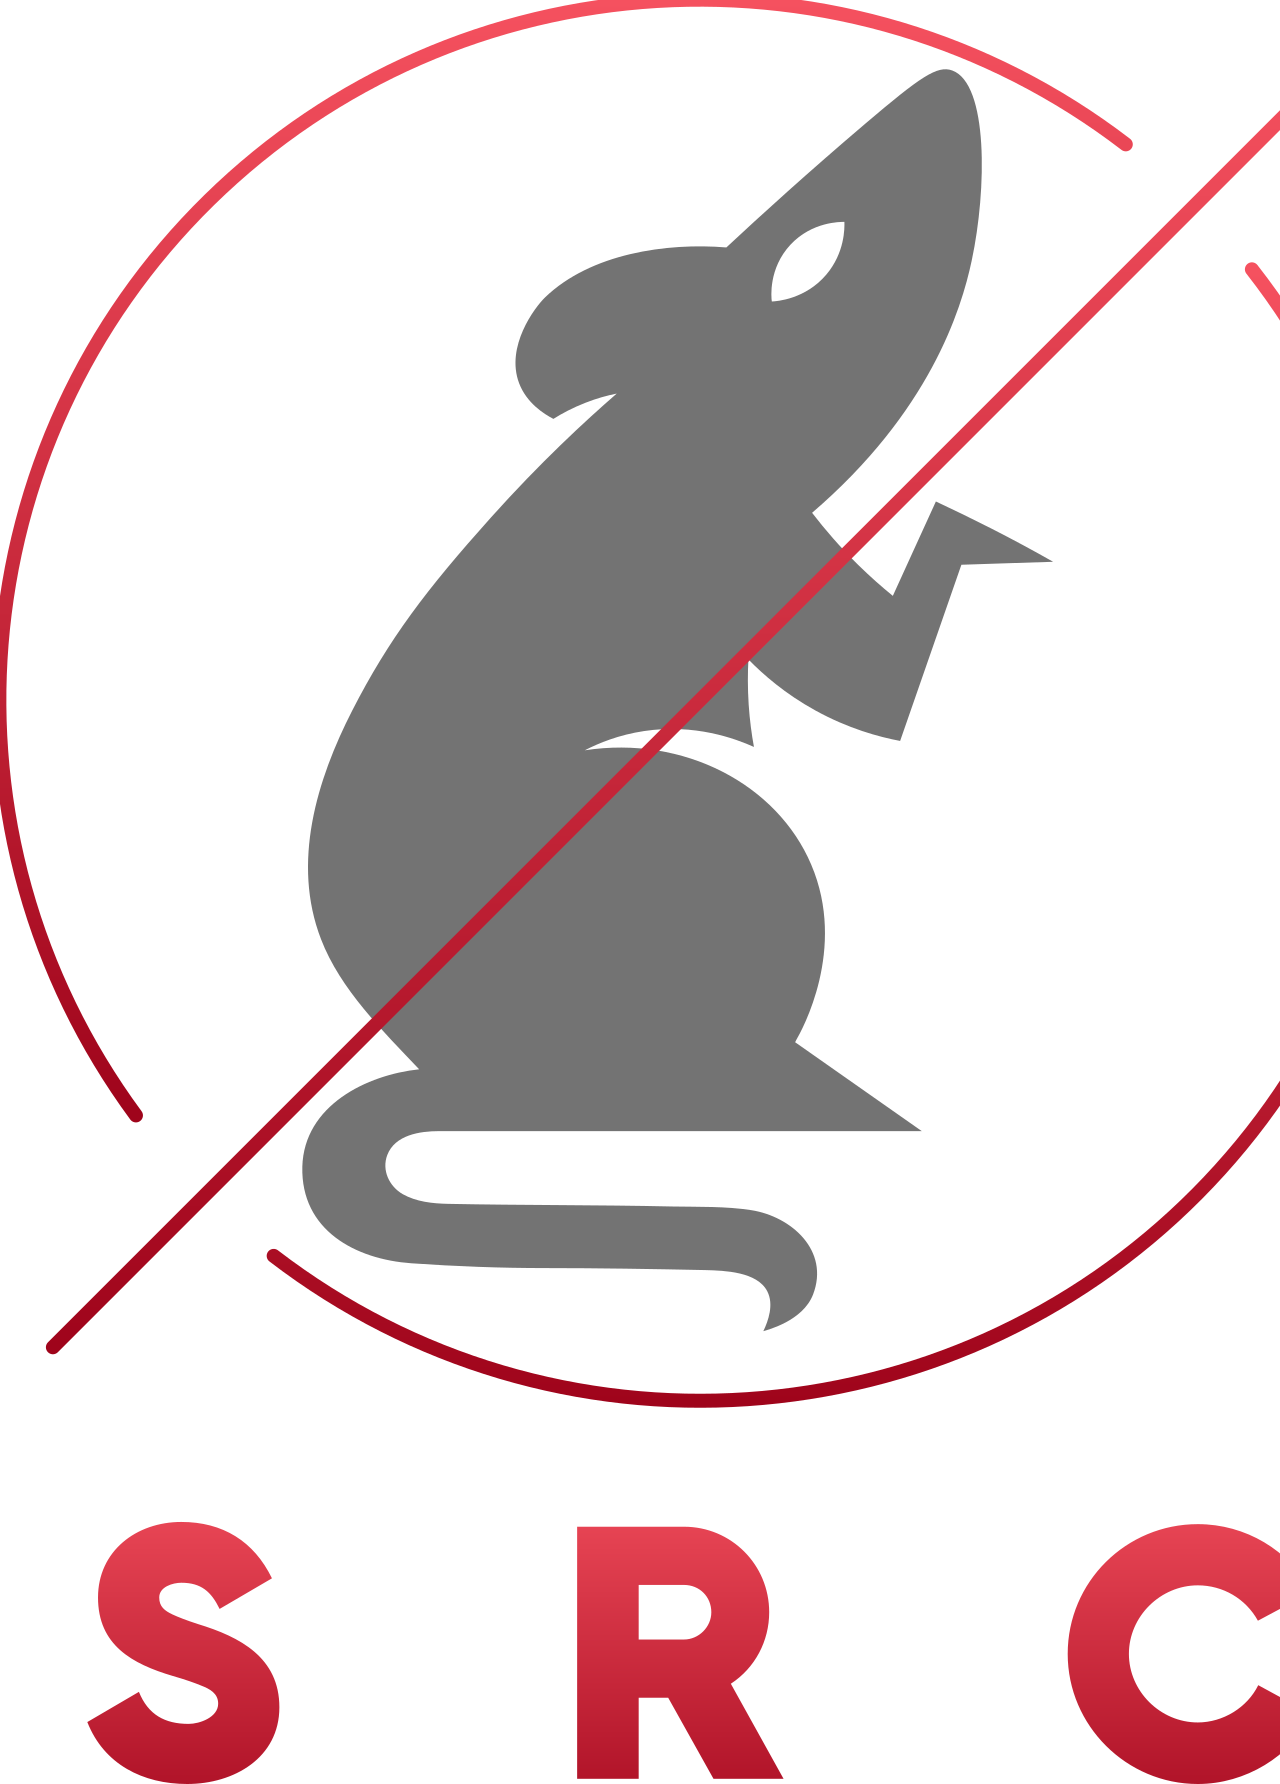 s r c's logo